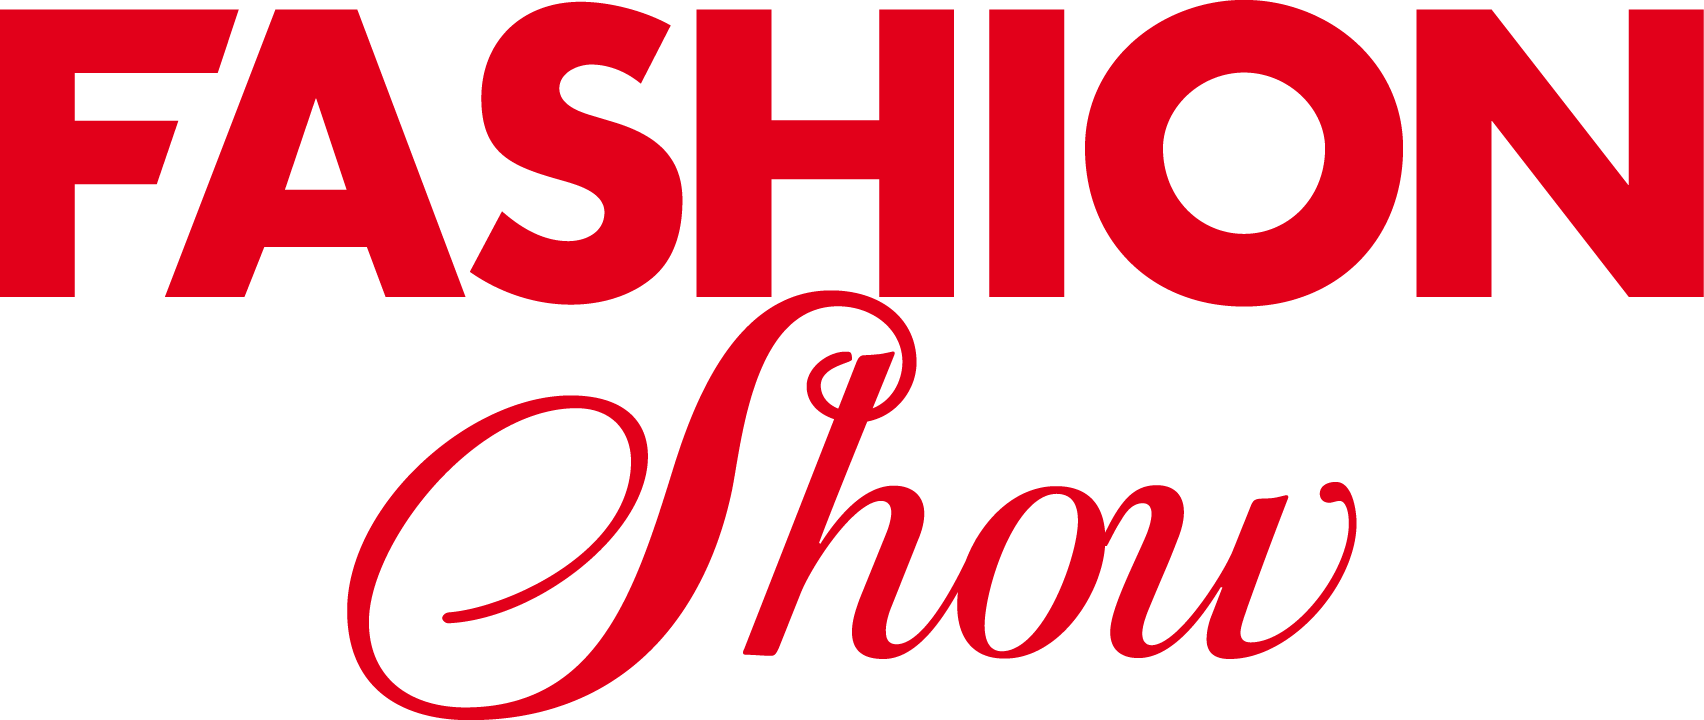 Fashion Show Logo - Fashion Show